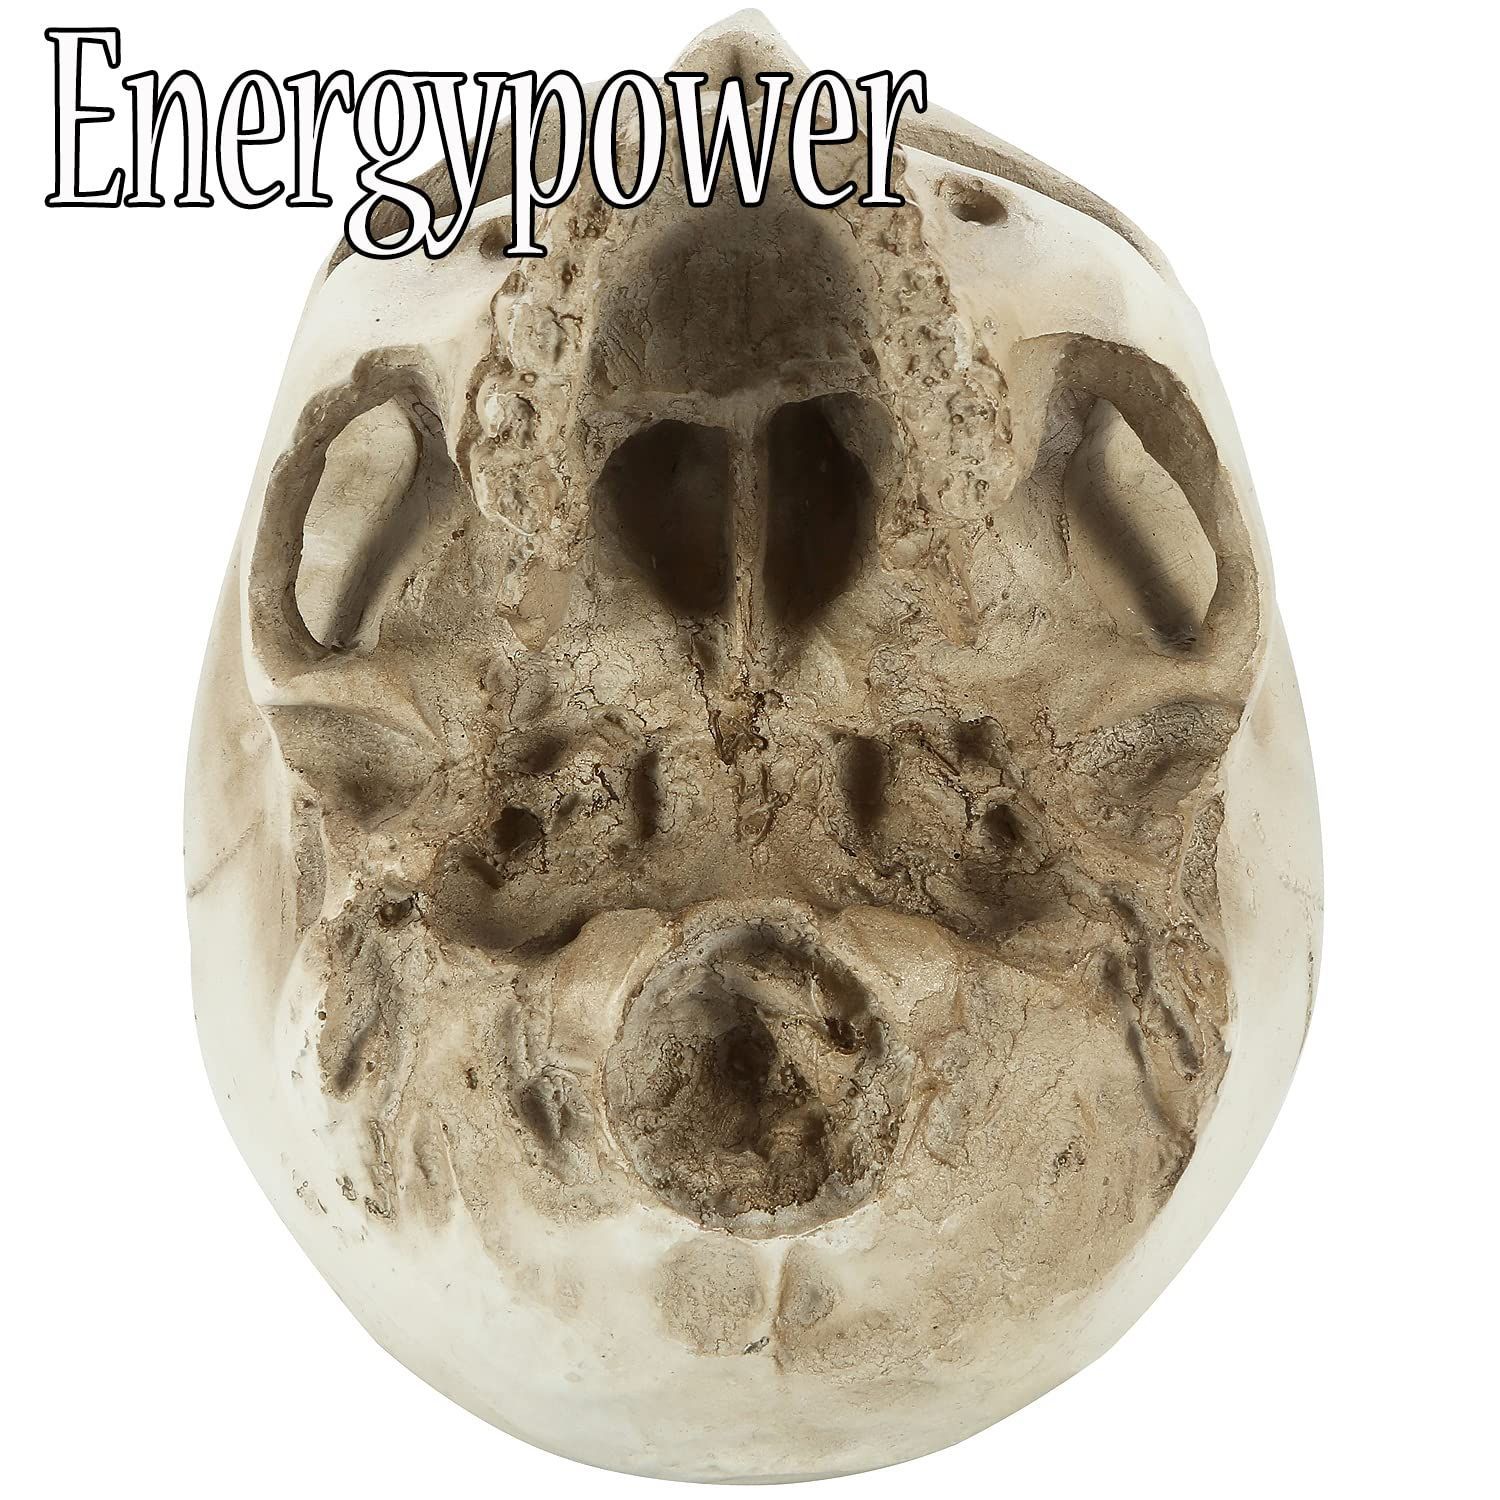 EnergyPower 実物大 頭蓋骨 レプリカ あごが動く可動式 骸骨 人体模